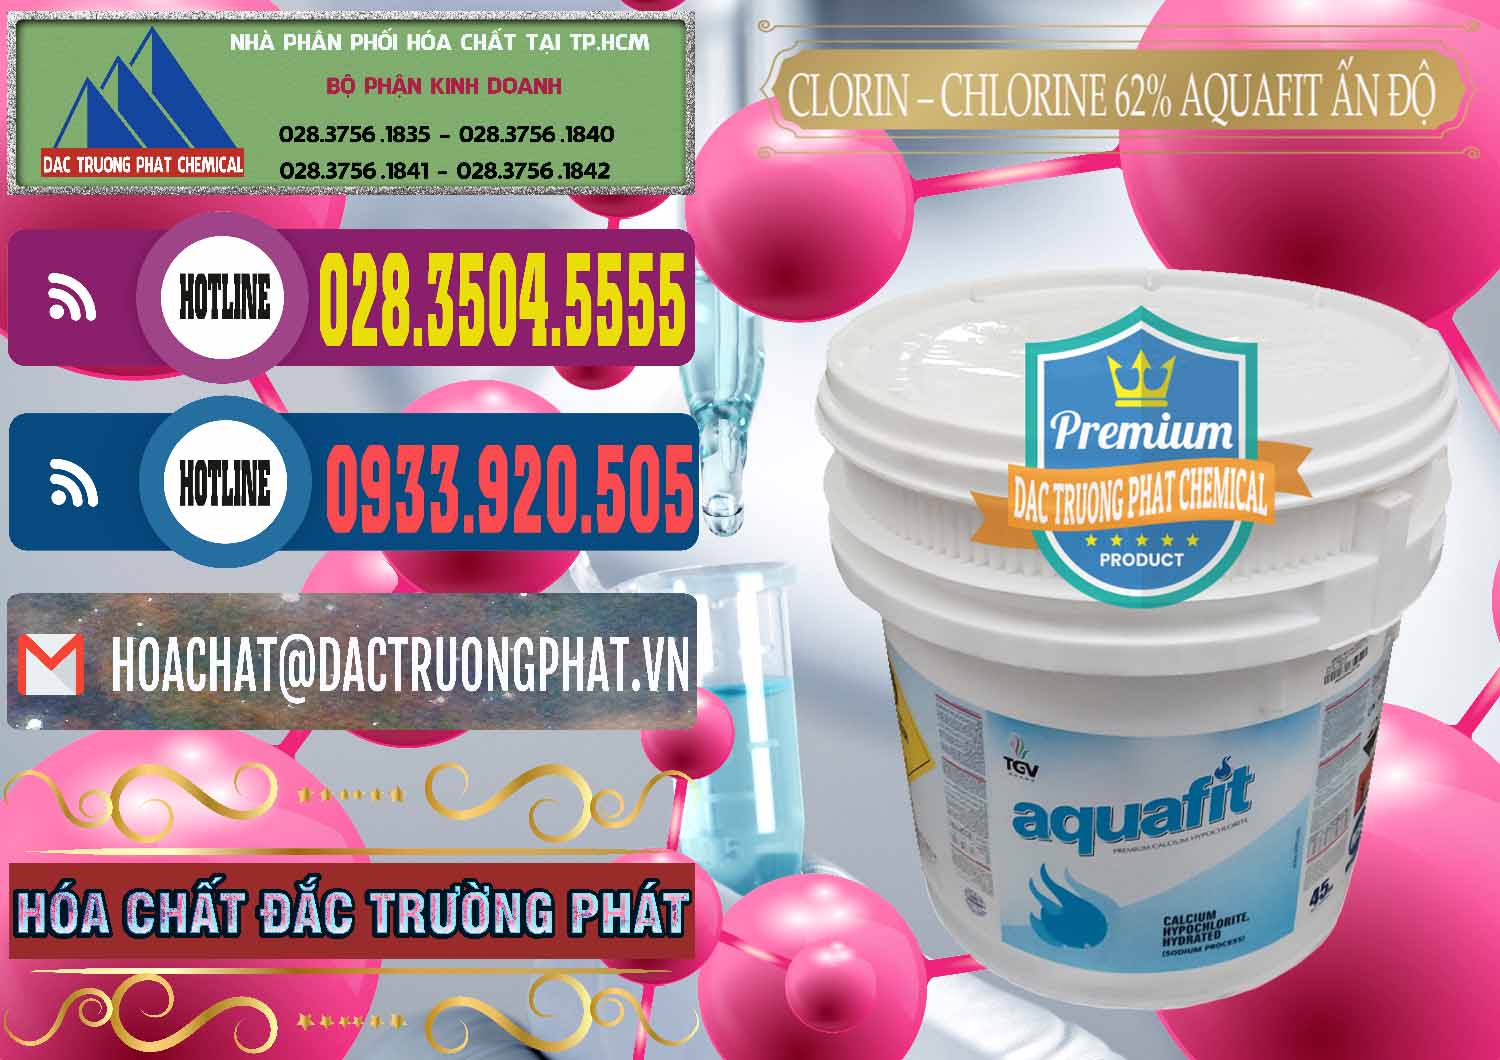 Chuyên cung cấp và bán Clorin - Chlorine 62% Aquafit Thùng Lùn Ấn Độ India - 0057 - Công ty chuyên nhập khẩu & cung cấp hóa chất tại TP.HCM - muabanhoachat.com.vn